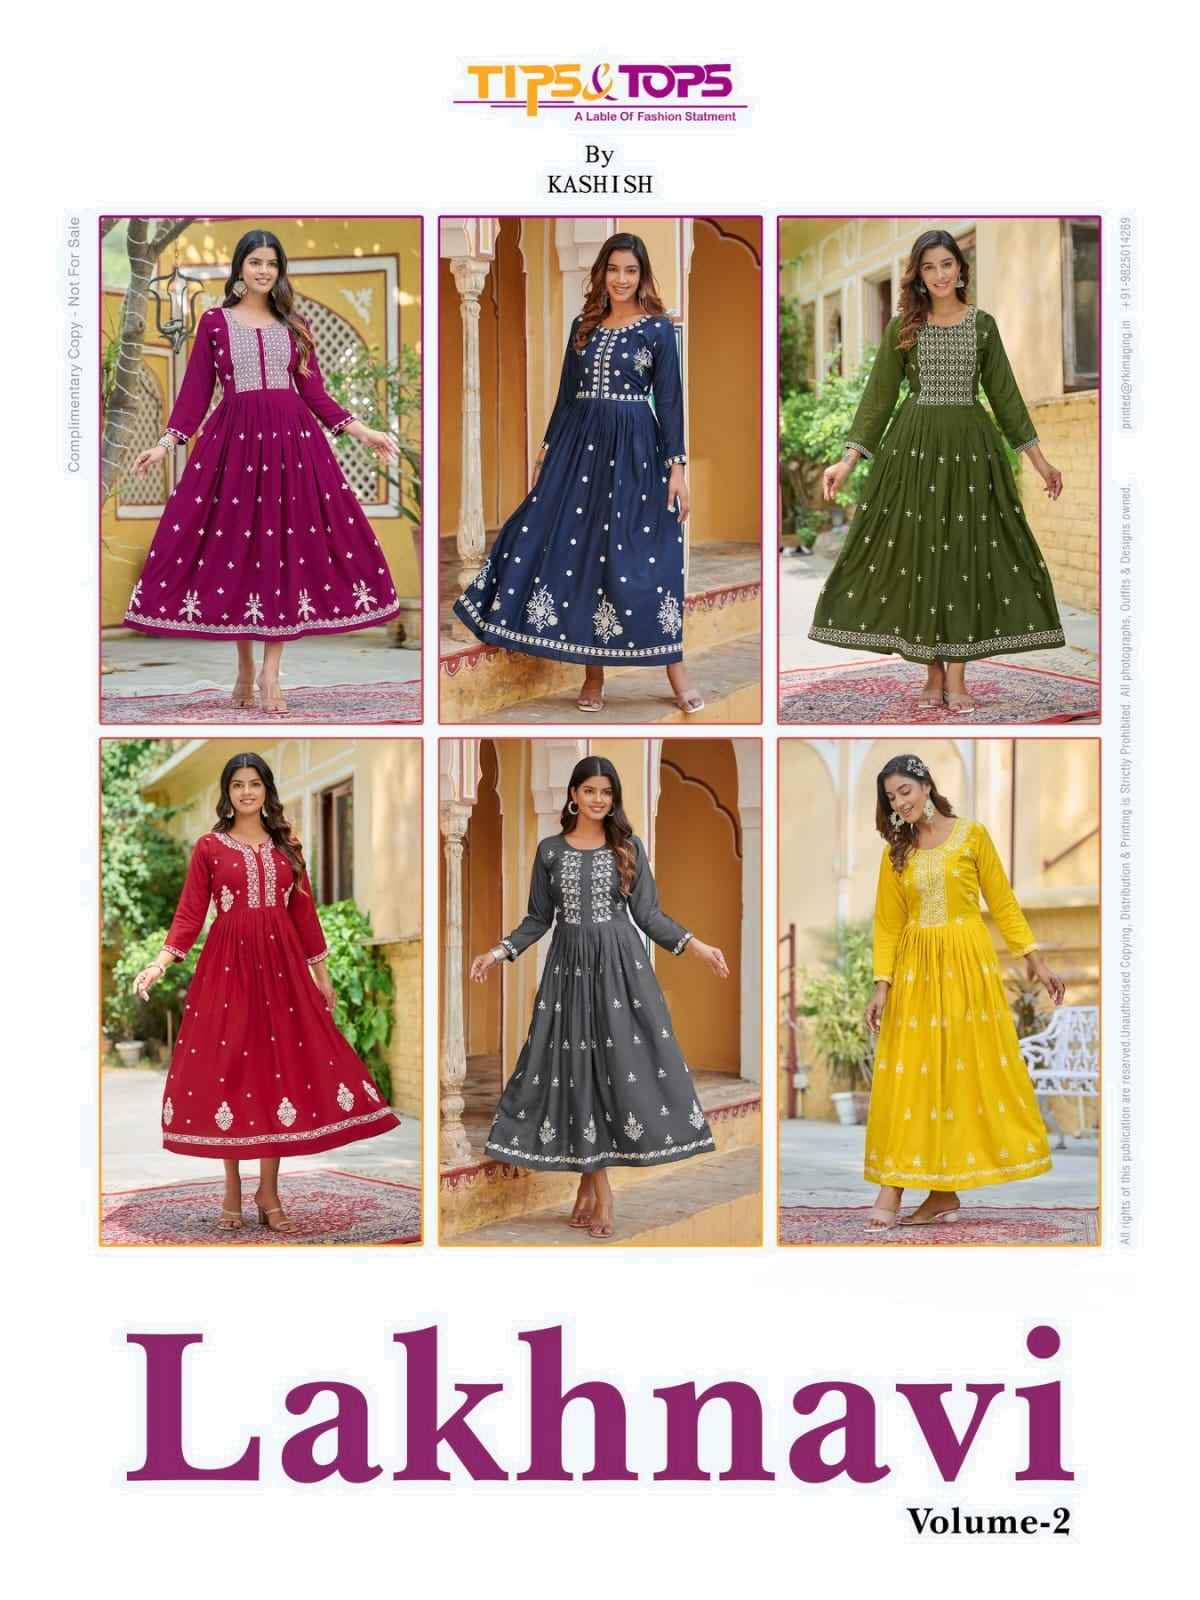 Tips & Tops Lakhnavi Vol 2 Rayon Gown 6 pcs Catalogue